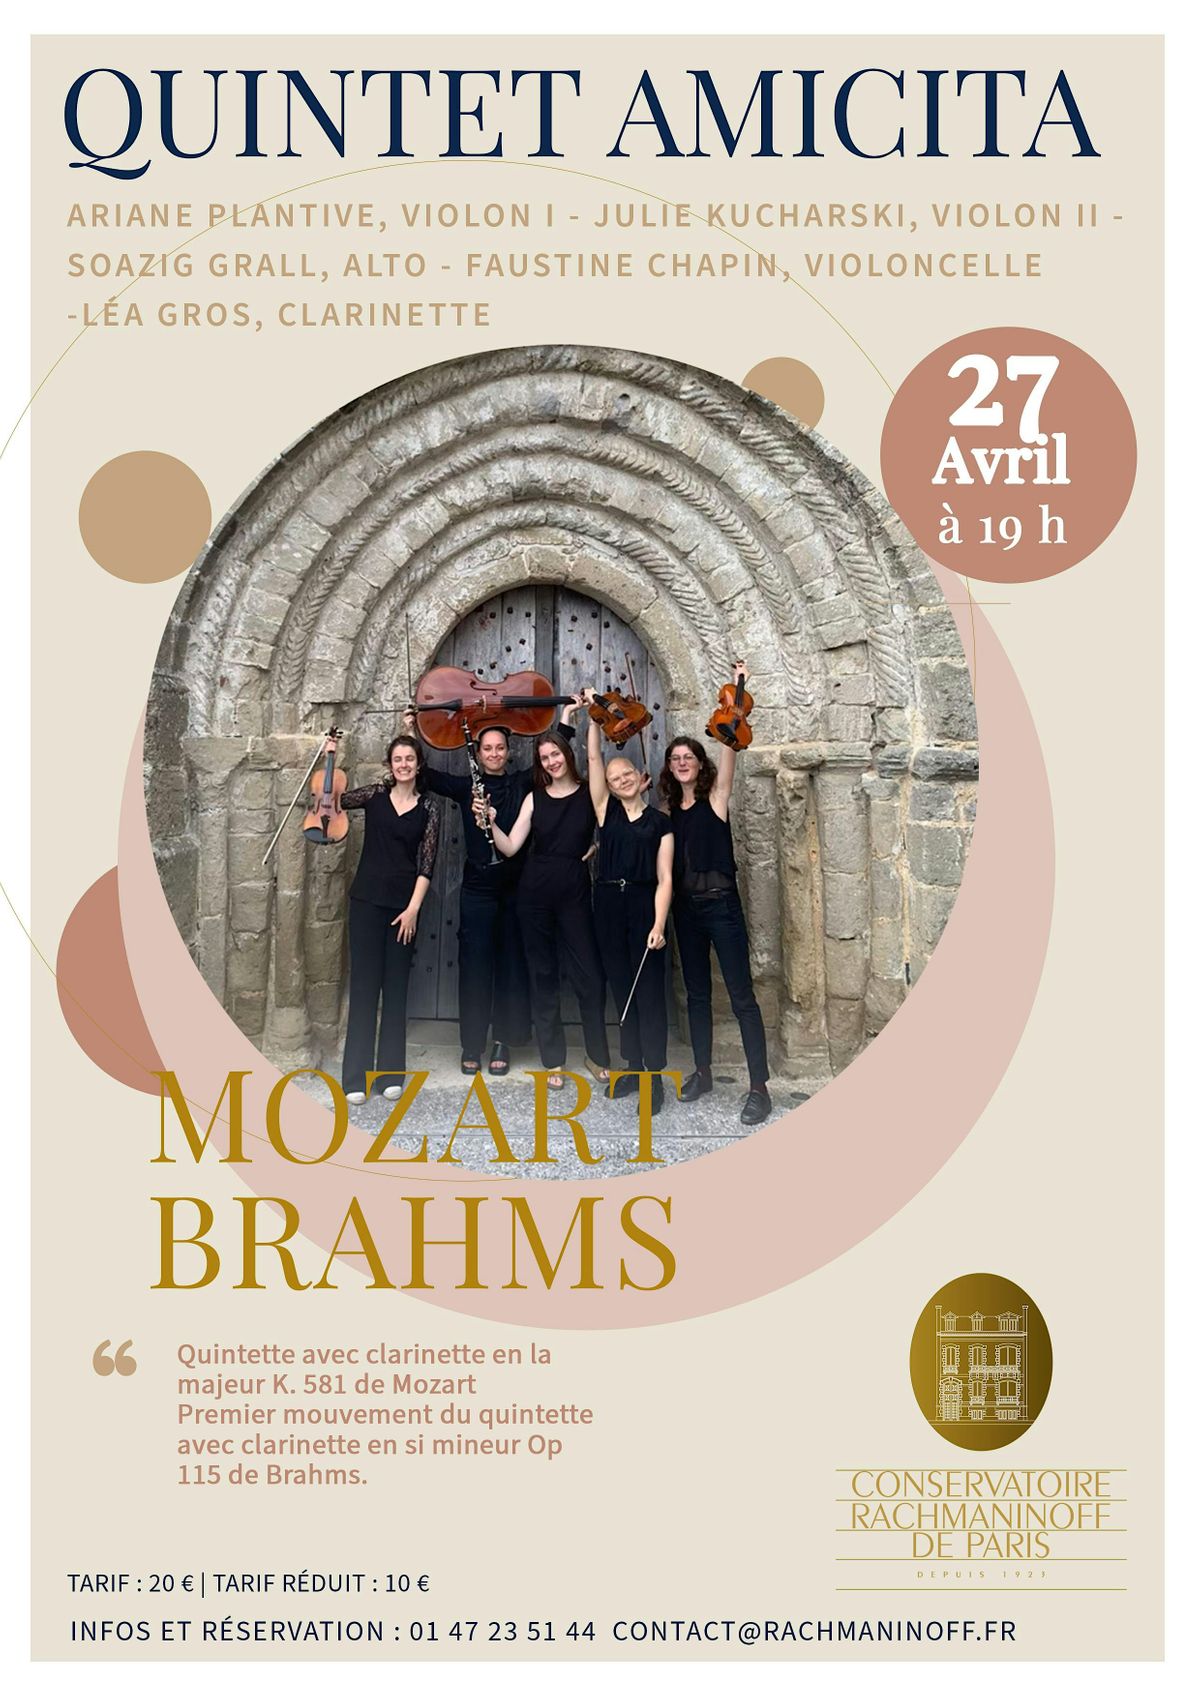 Quintette Amicita pour Mozart et Brahms